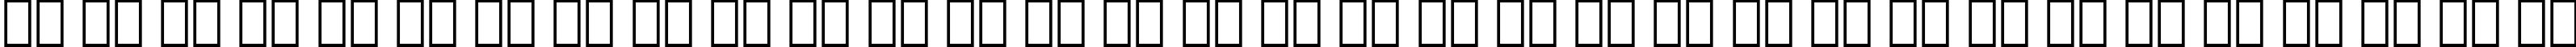 Пример написания русского алфавита шрифтом Fraktur BT